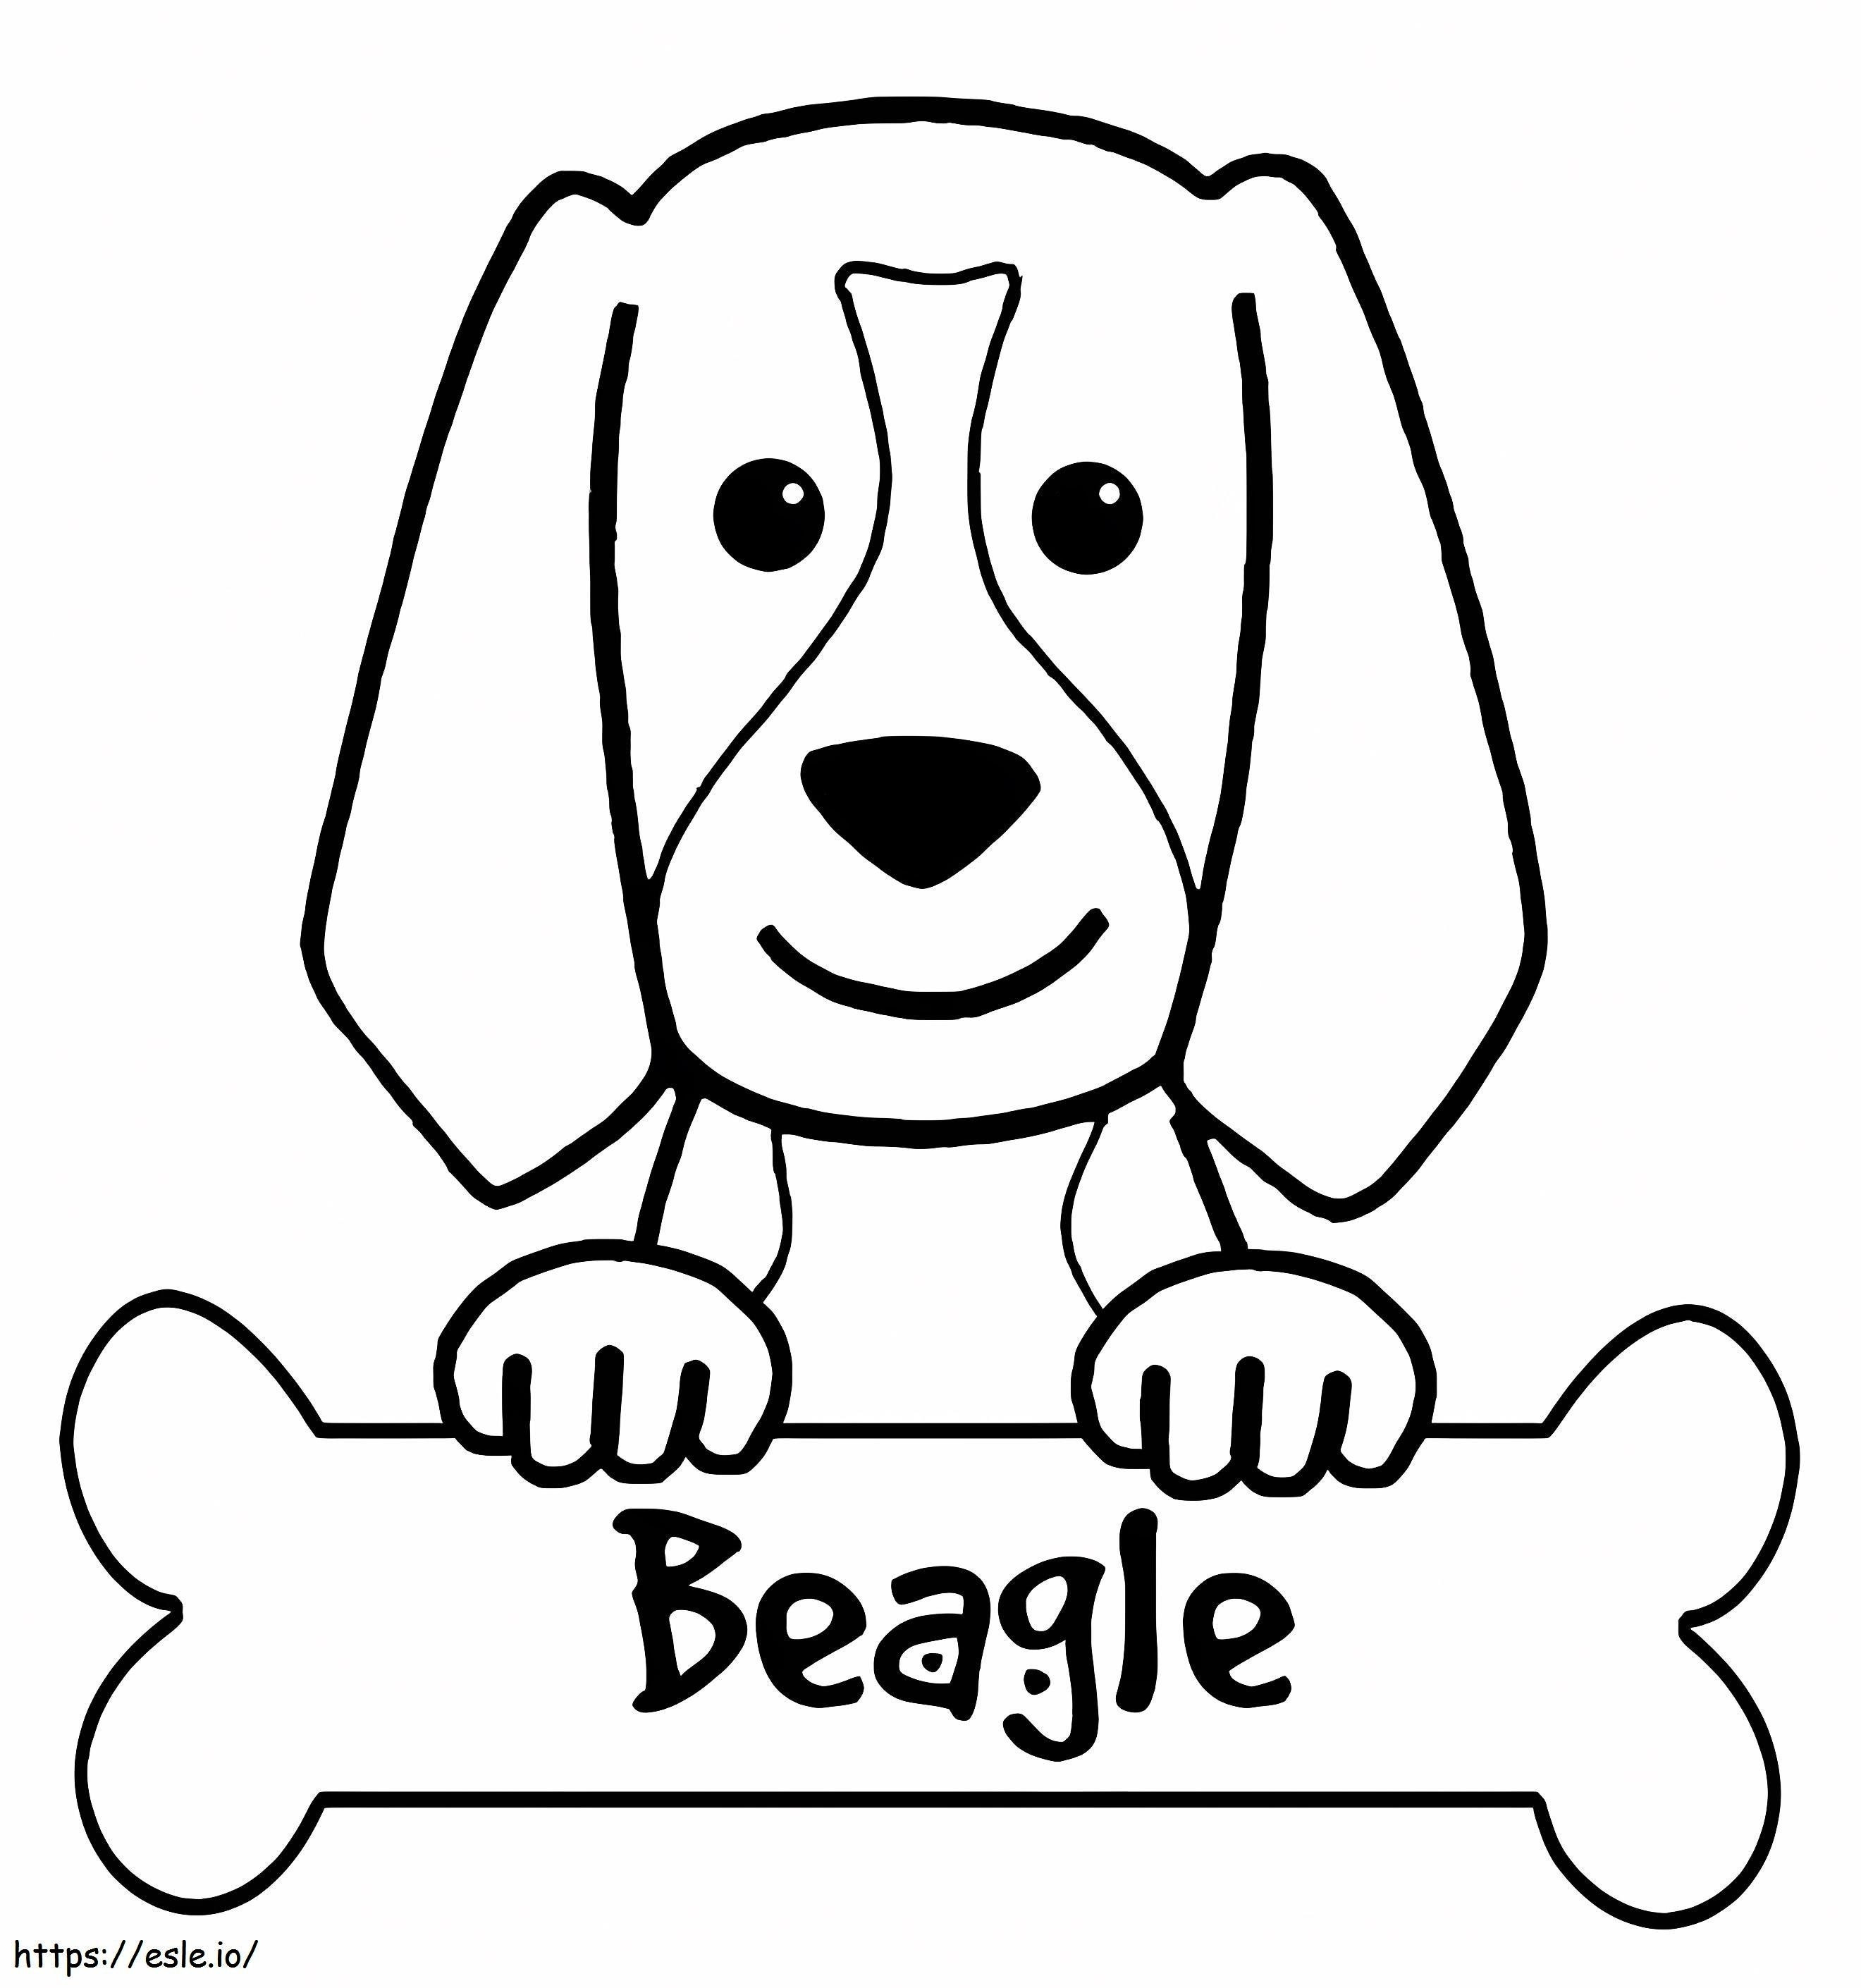 Süßer Beagle-Hund ausmalbilder